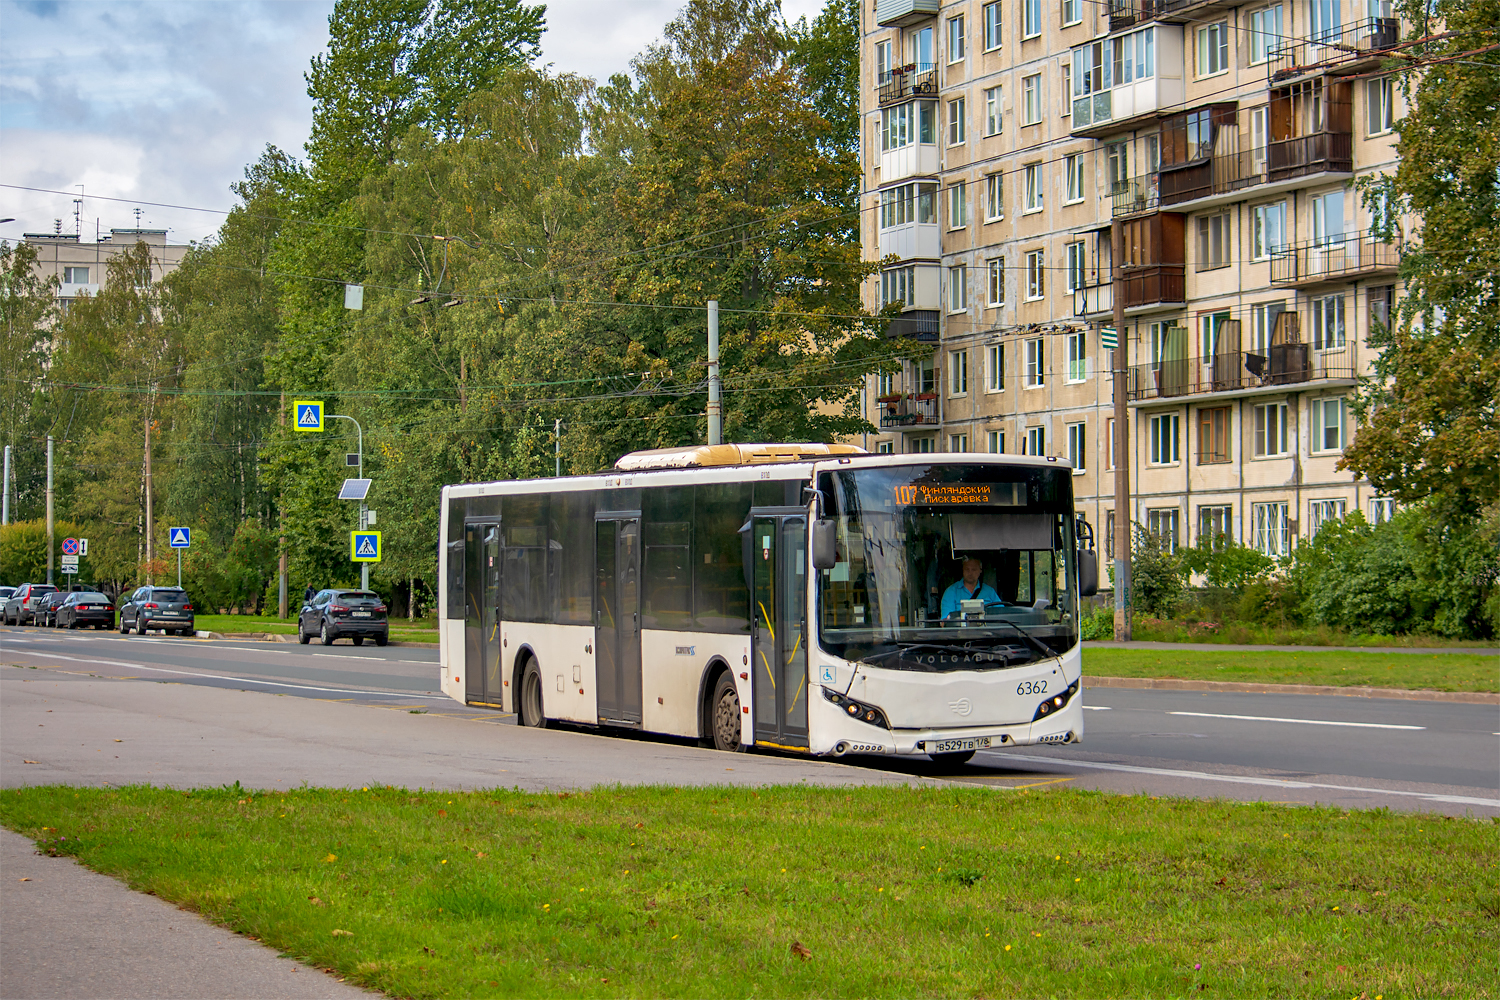 Saint Petersburg, Volgabus-5270.05 # 6362